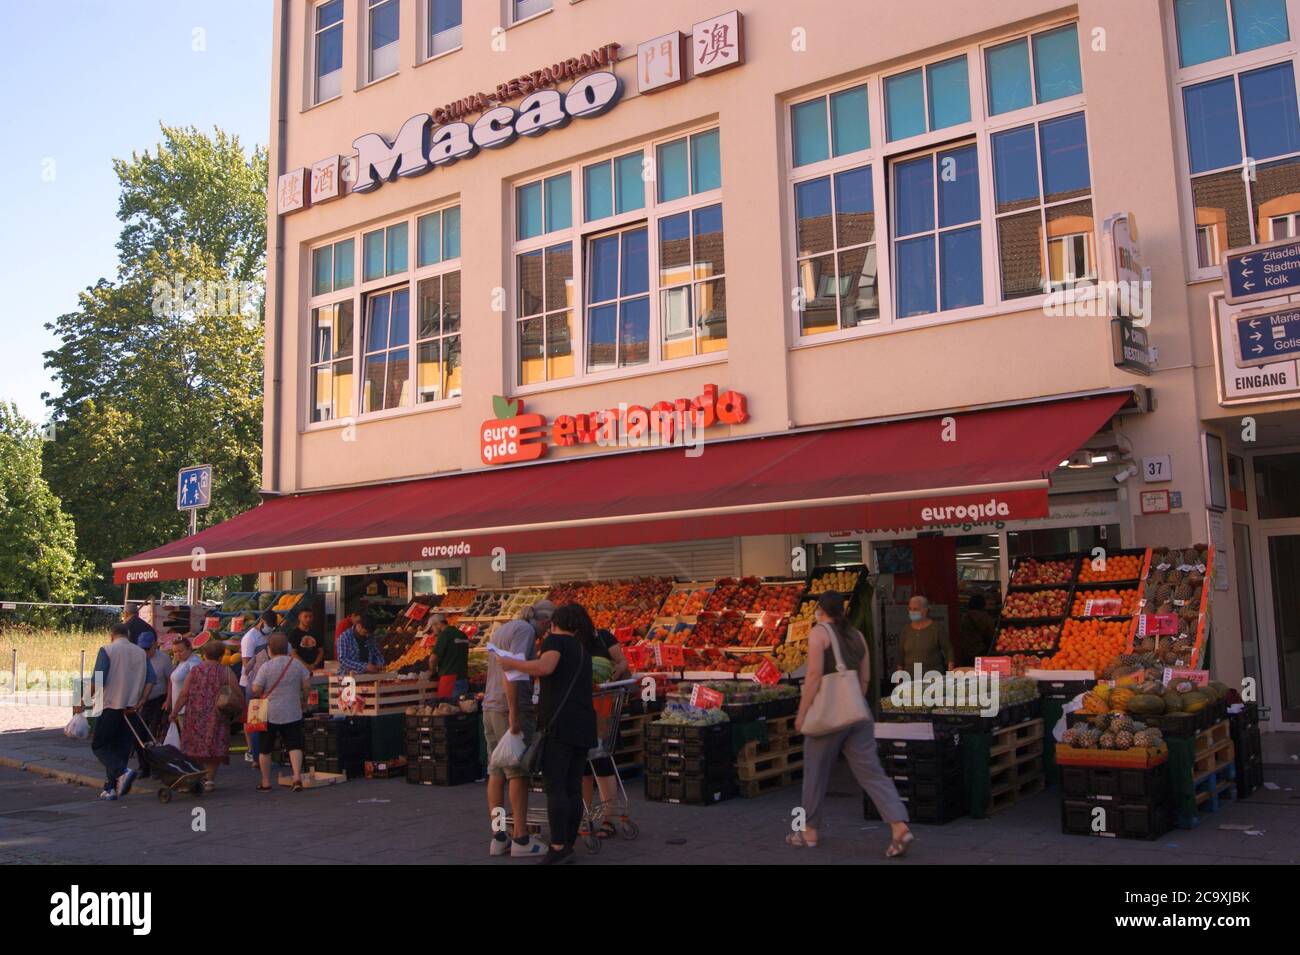 Supermarktkette eurogida, die überwiegend türkische Spezialitäten im Sortiment führt. Foto de stock